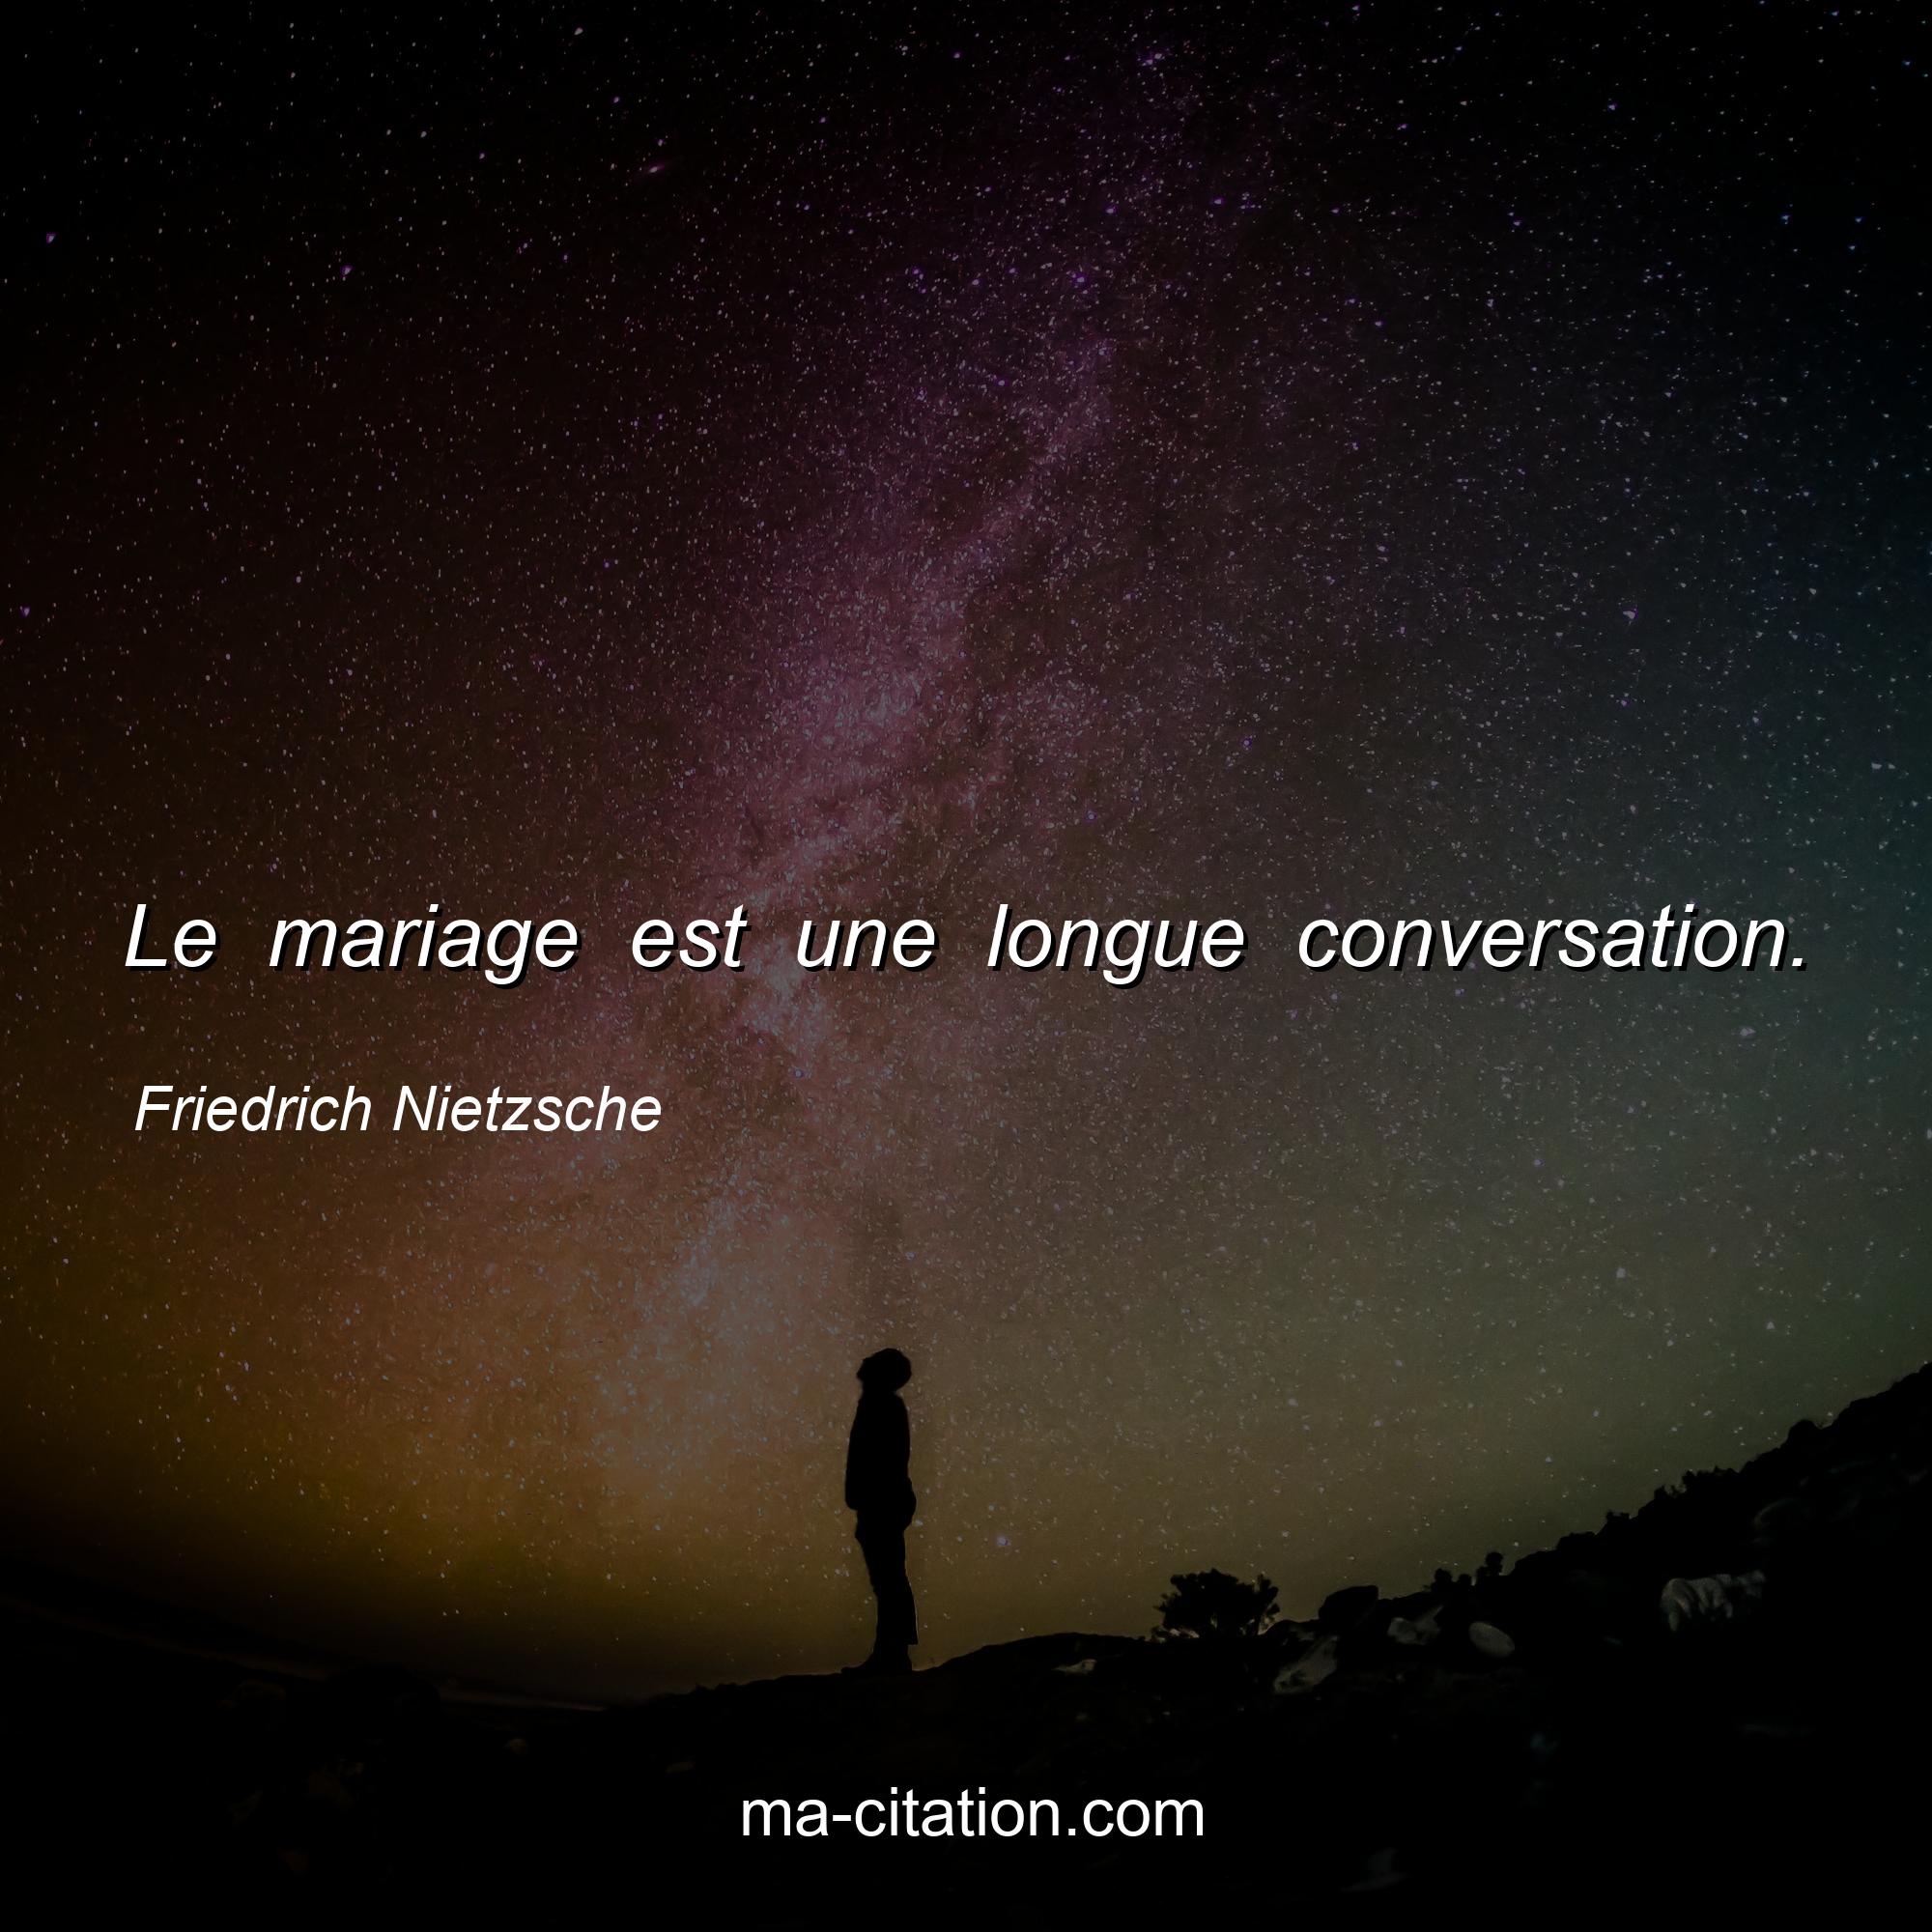 Friedrich Nietzsche : Le mariage est une longue conversation.